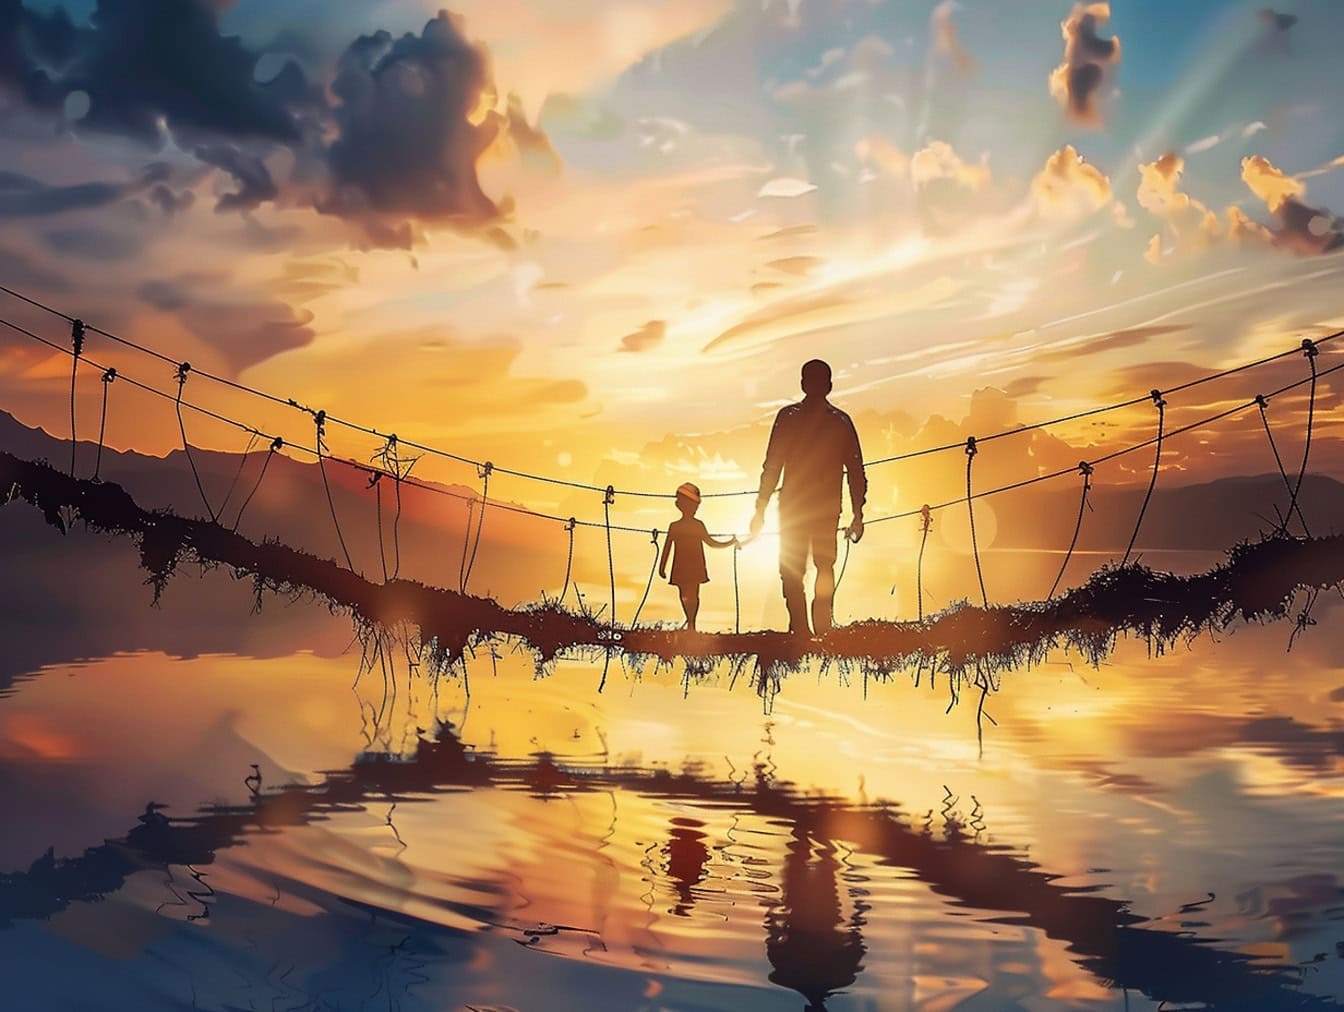 Su üzerinde bir yaya köprüsünde duran ve ufukta gün batımını izleyen bir baba ve çocuğun siluetleri